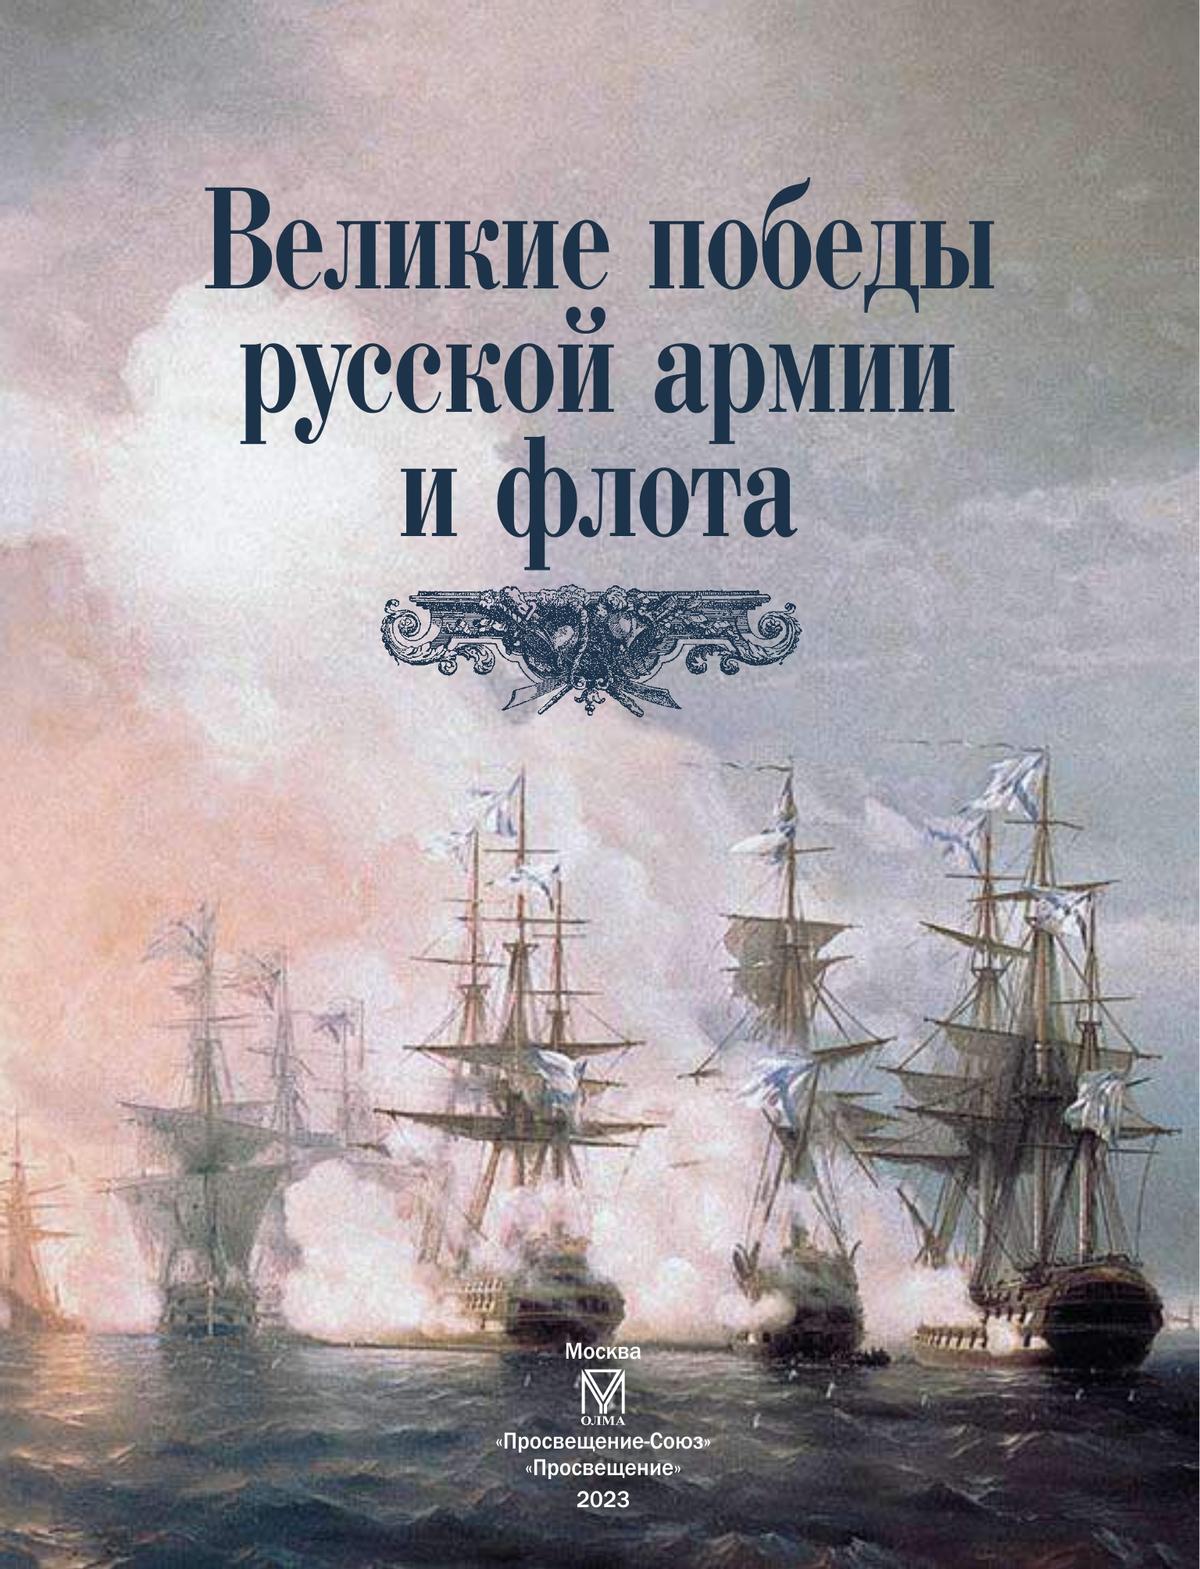 Великие победы русской армии и флота 2